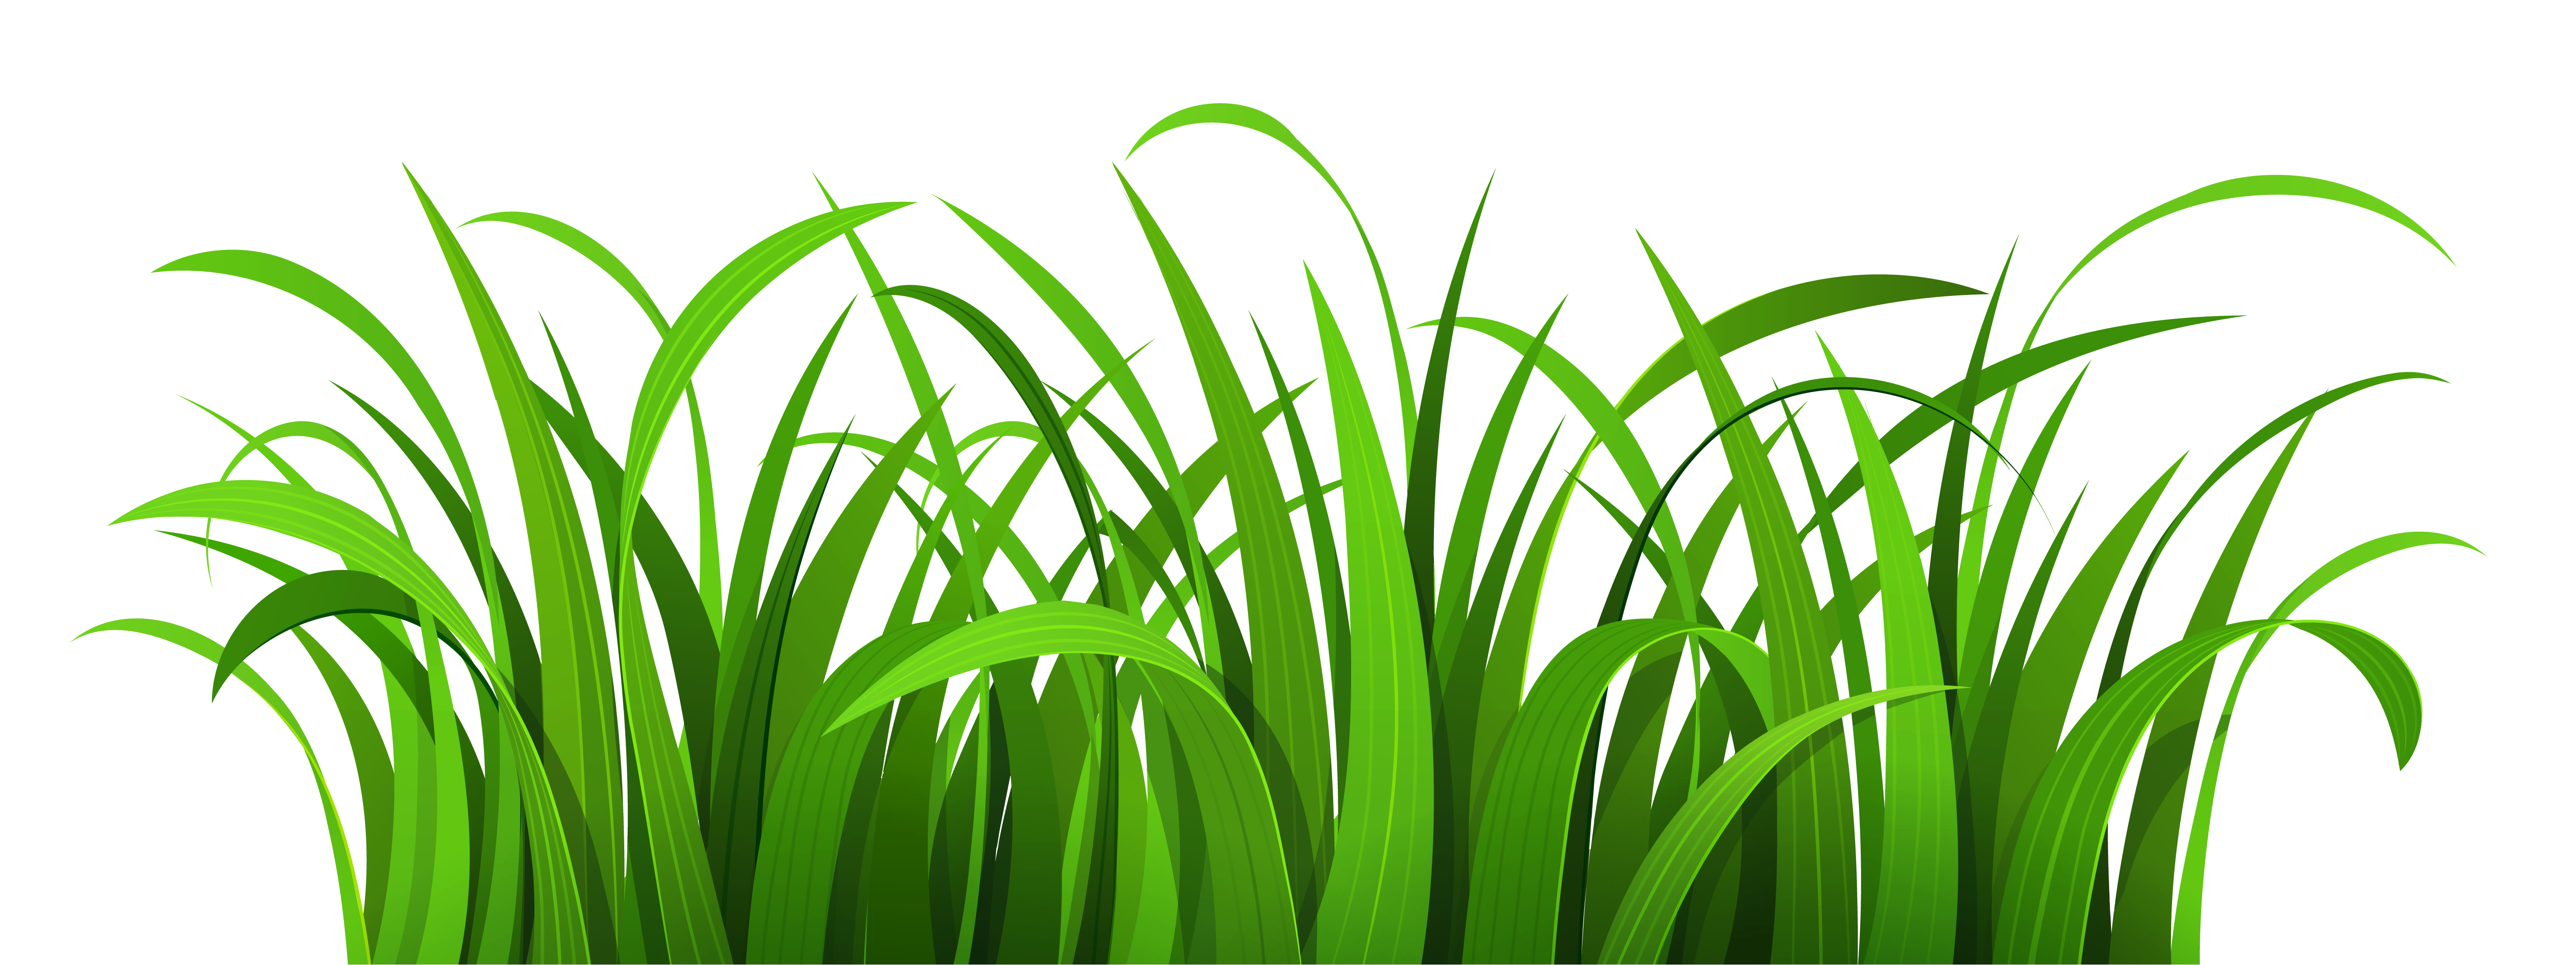 grass clipart - Clip Art Grass